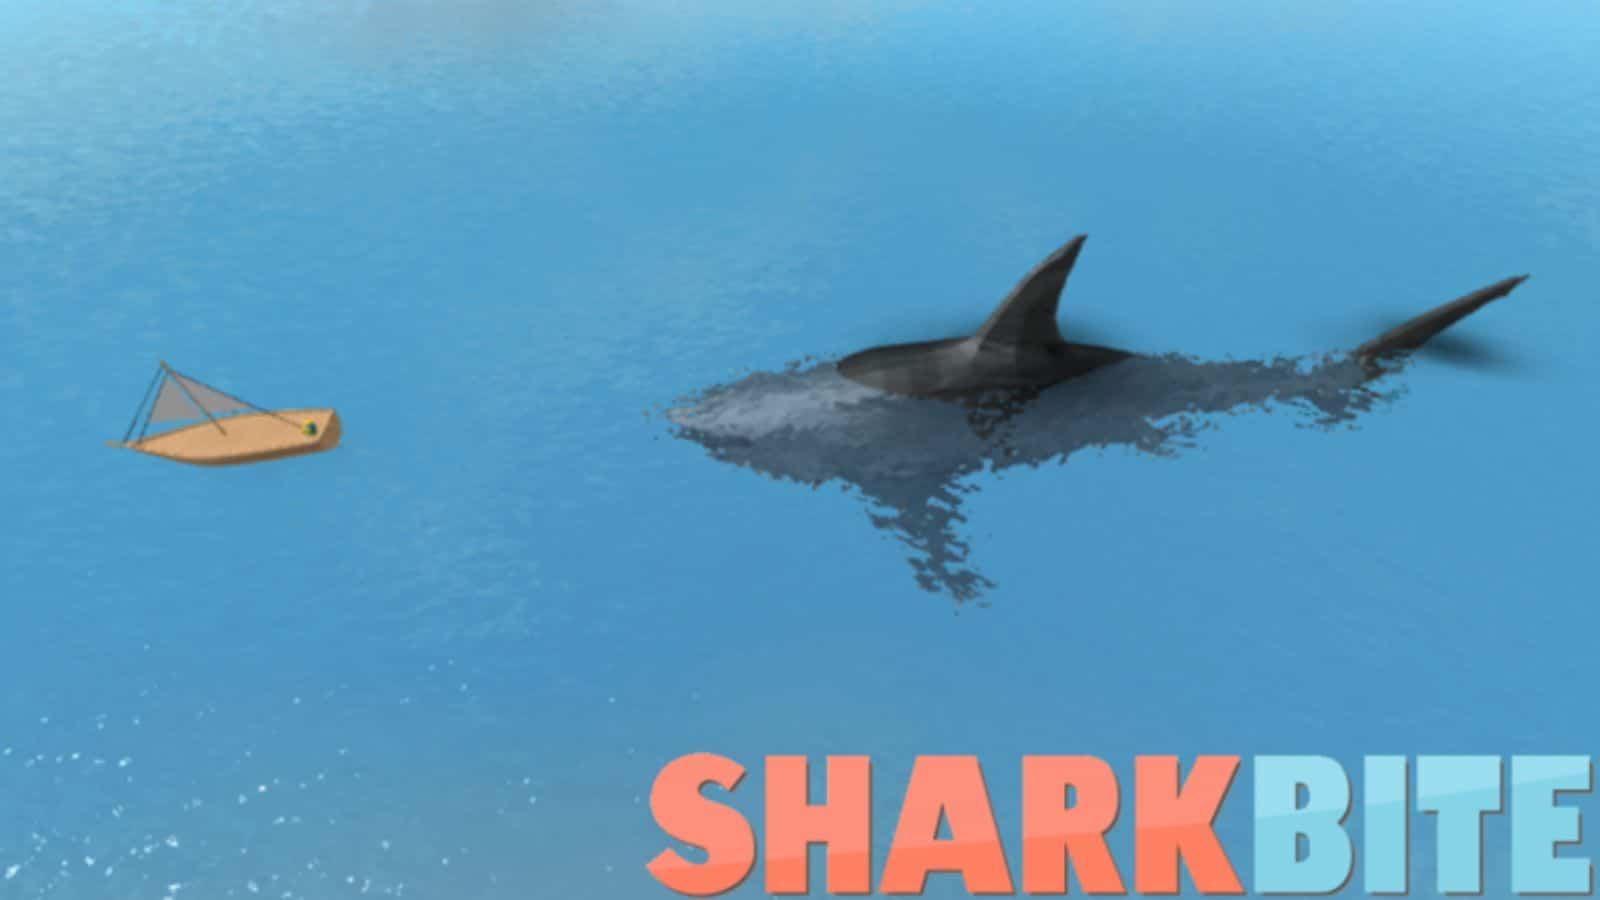 Sharkbite cover image